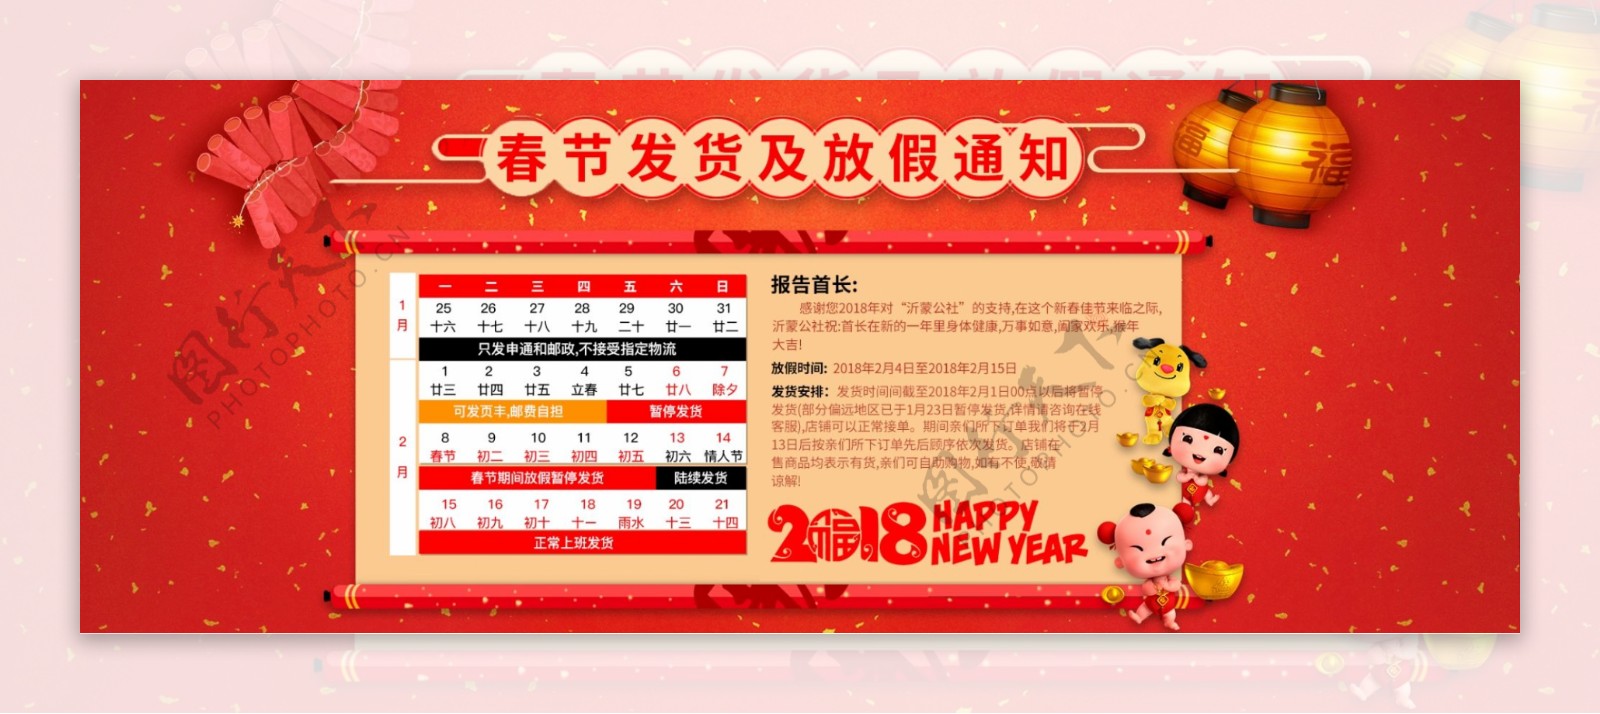 电商淘宝天猫春节发货放假通知海报设计